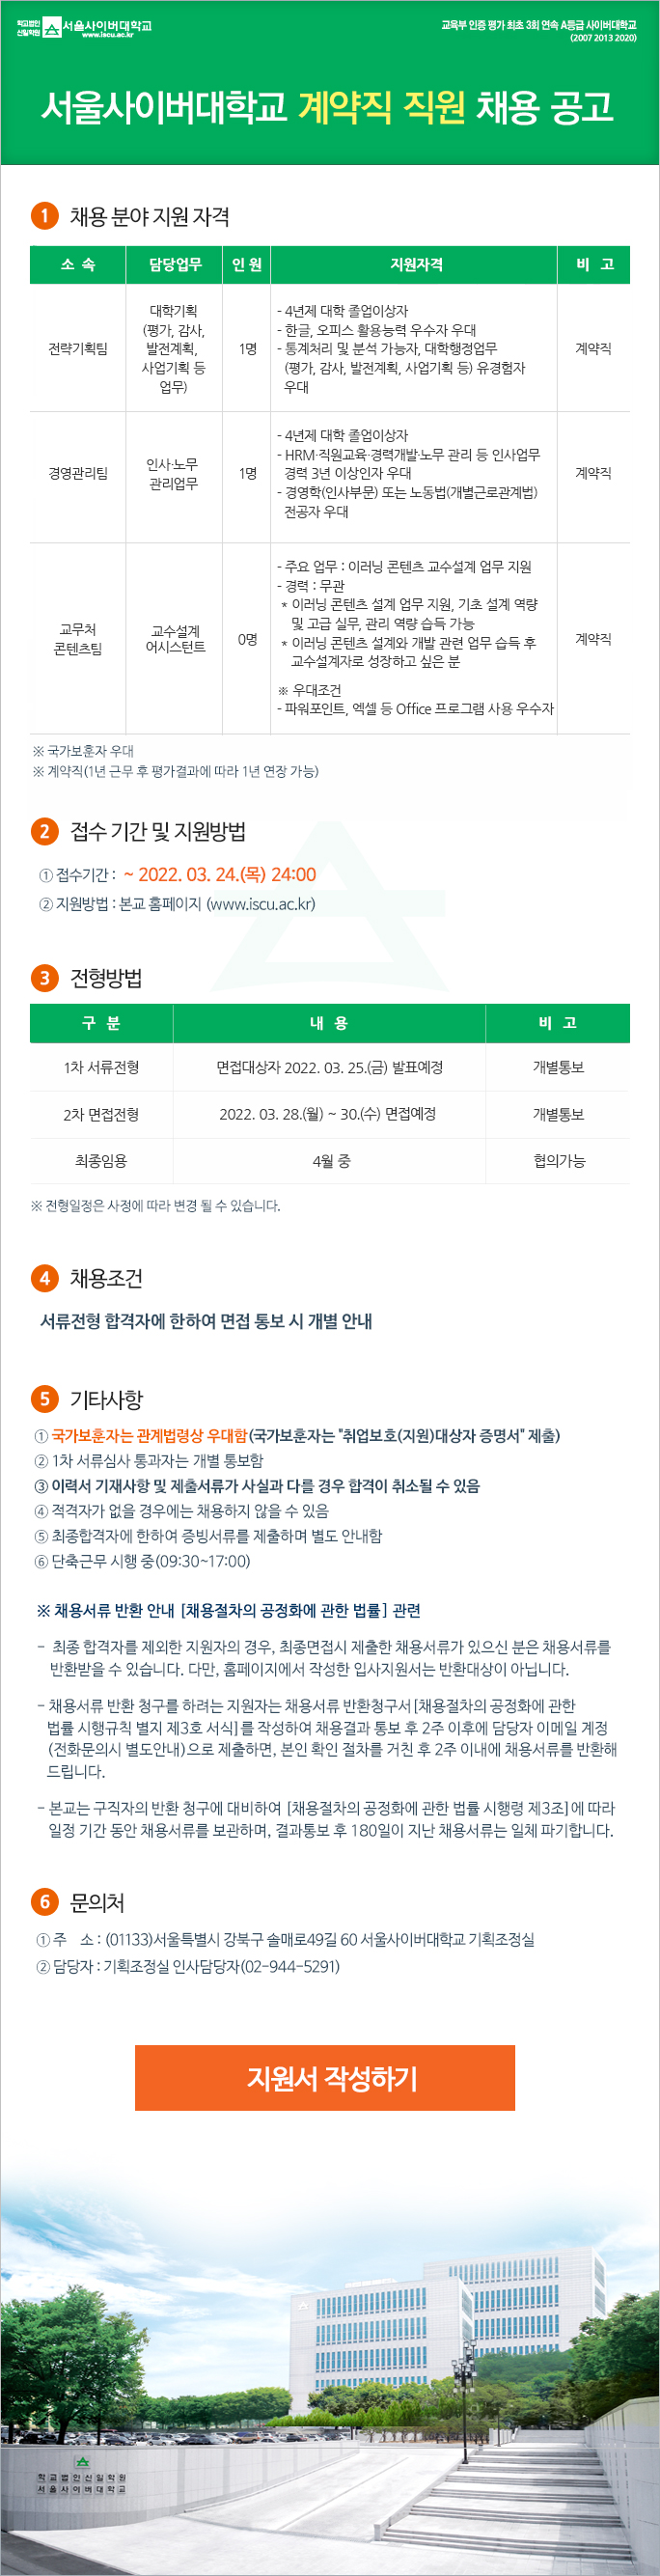 서울사이버대학교 계약직 채용공고 - 아래내용참조